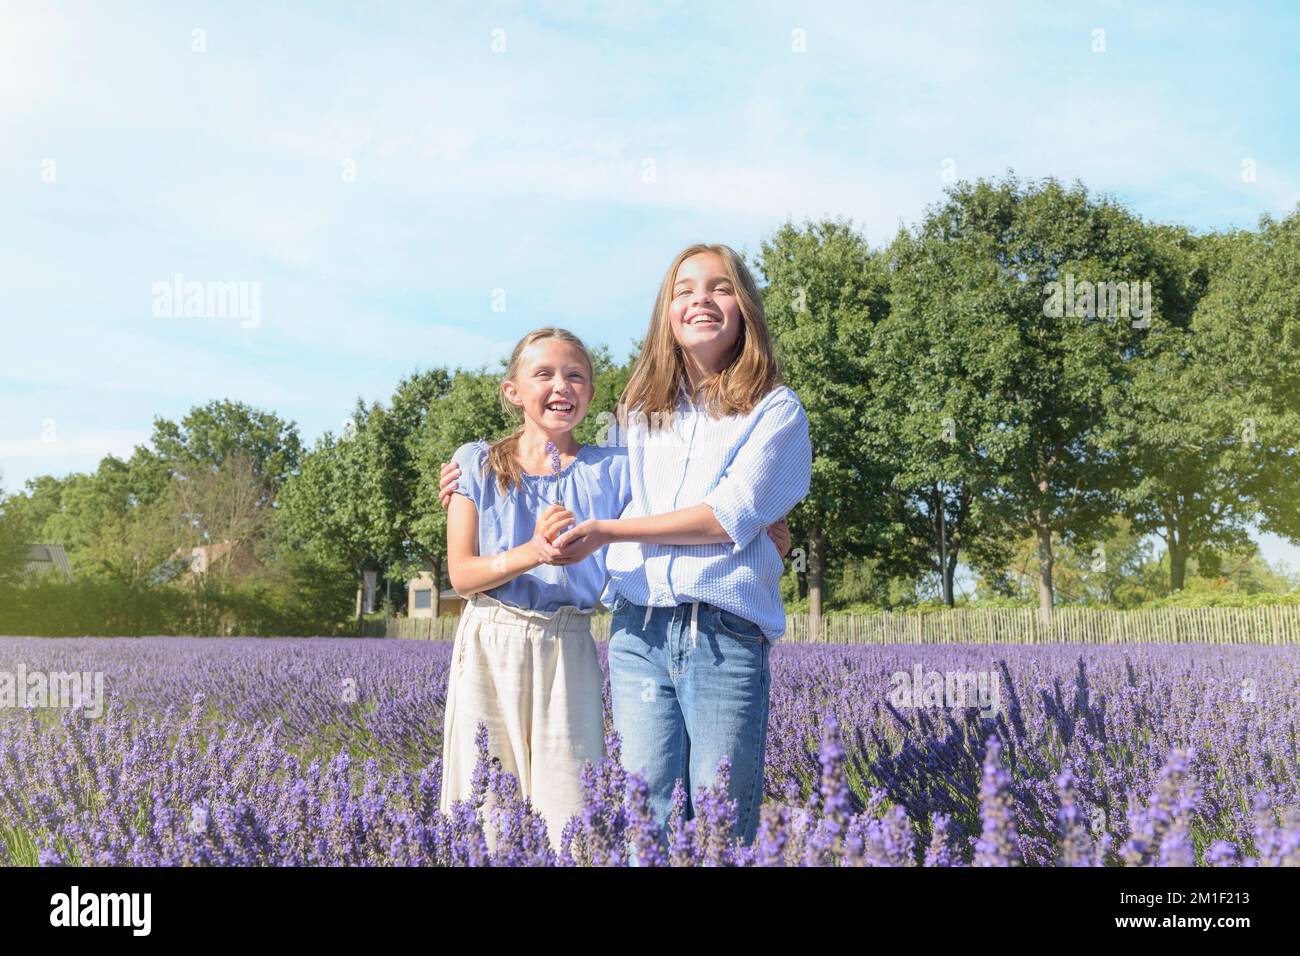 Zwei Teenager-Mädchen, Freunde mitten in einem blühenden Lavendelfeld. Die Freude der Kindheit. Lifestyle Stockfoto